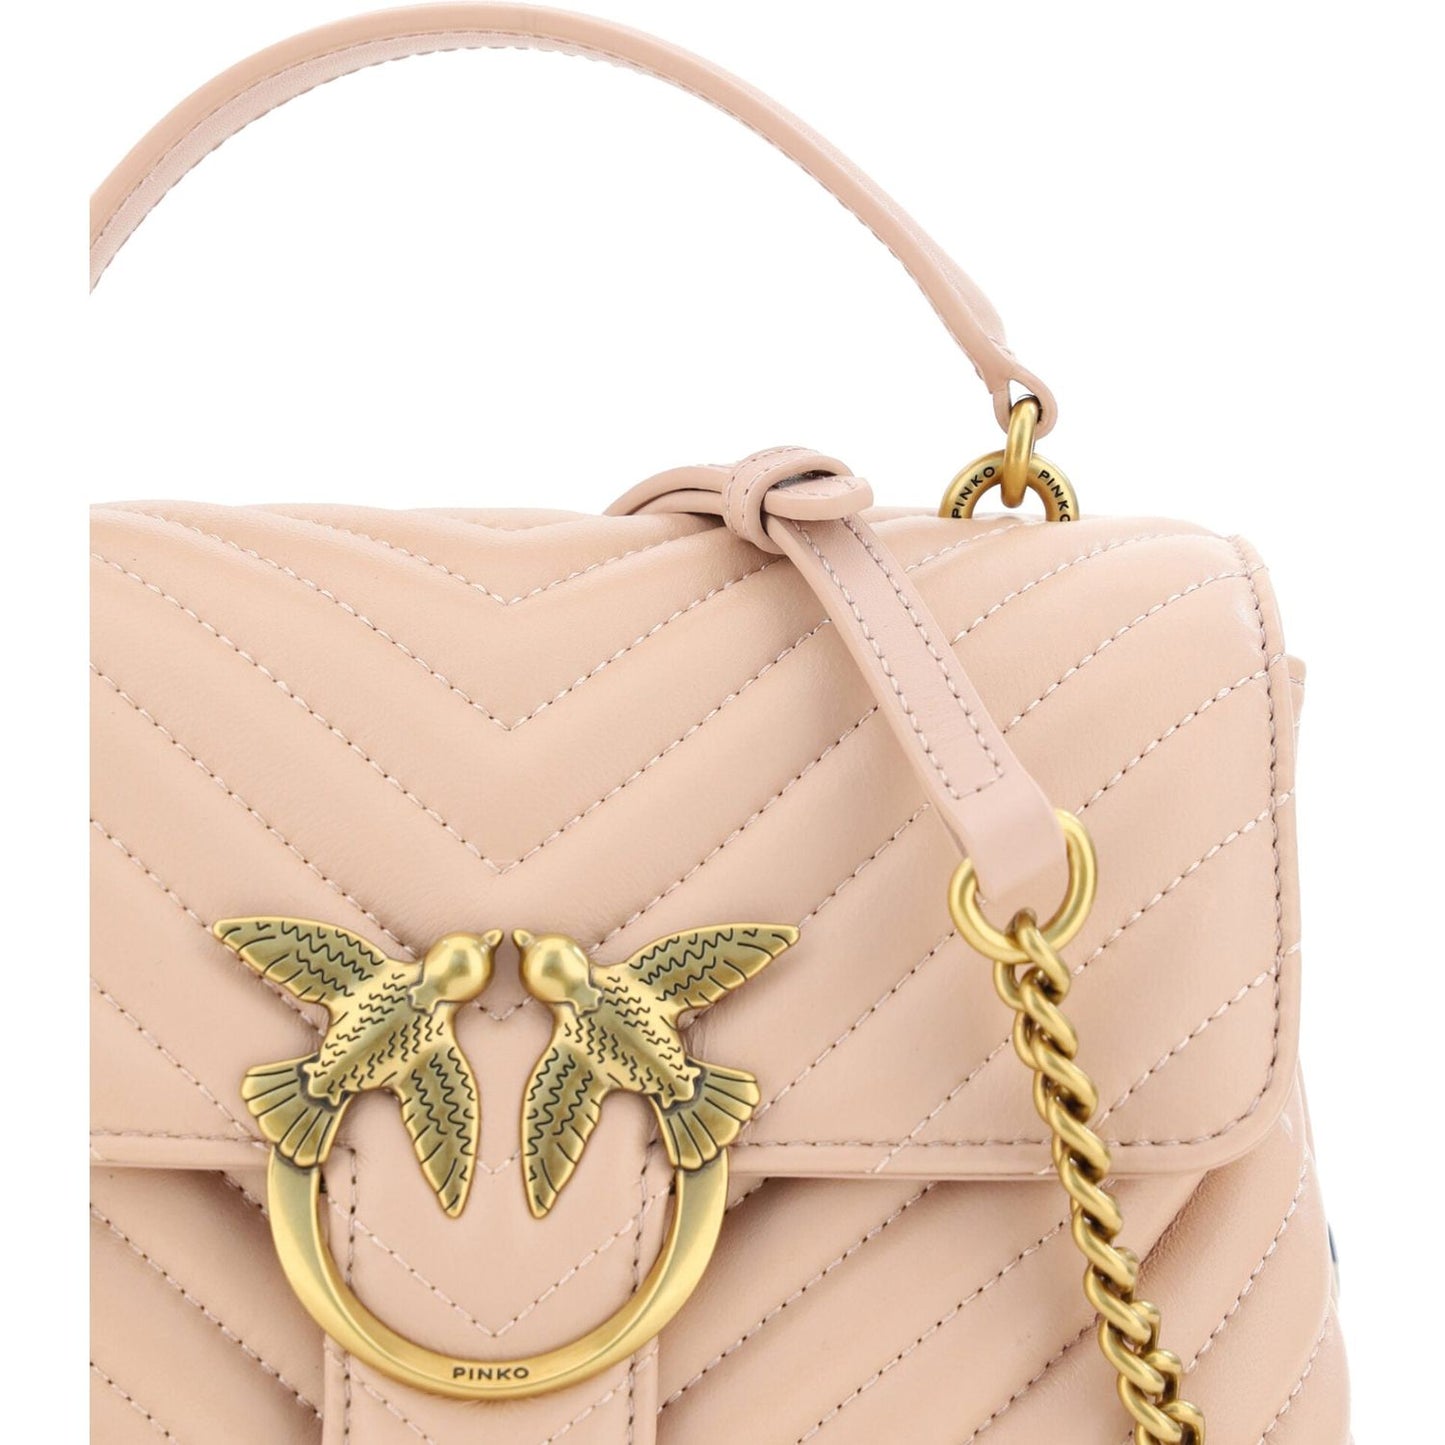 PINKO Chic Cipria Pink Mini Love Handbag pink-calf-leather-love-lady-mini-handbag 3B4BB51B-F125-430A-8D2B-EF757188136B-scaled-0b92f3b4-8a0.jpg